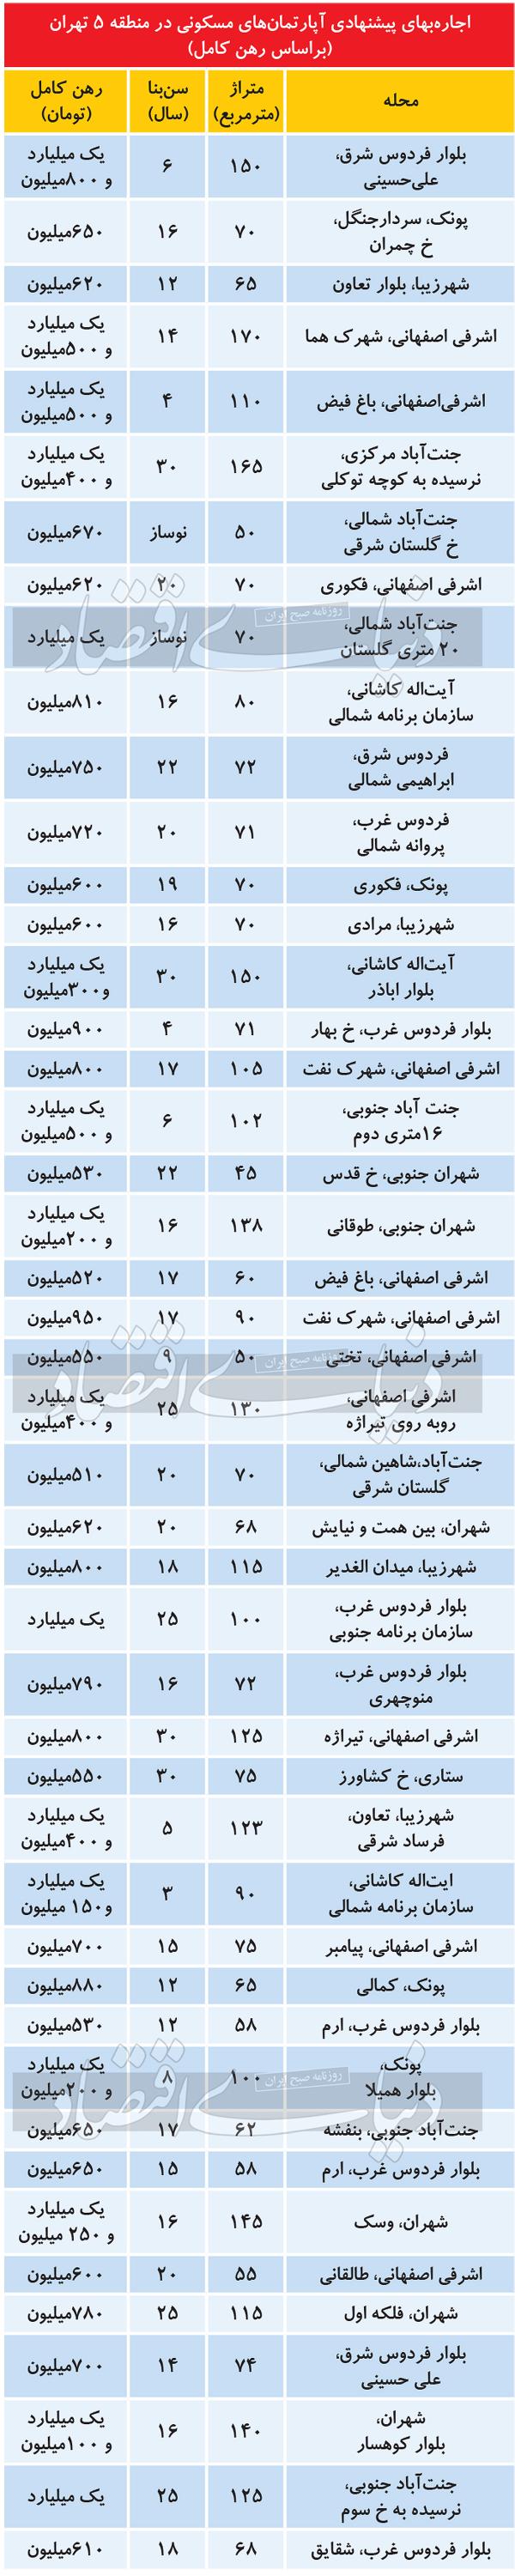 قیمت مسکن در تهران,قیمت مسکن در منطقه متوسط شهر تهران